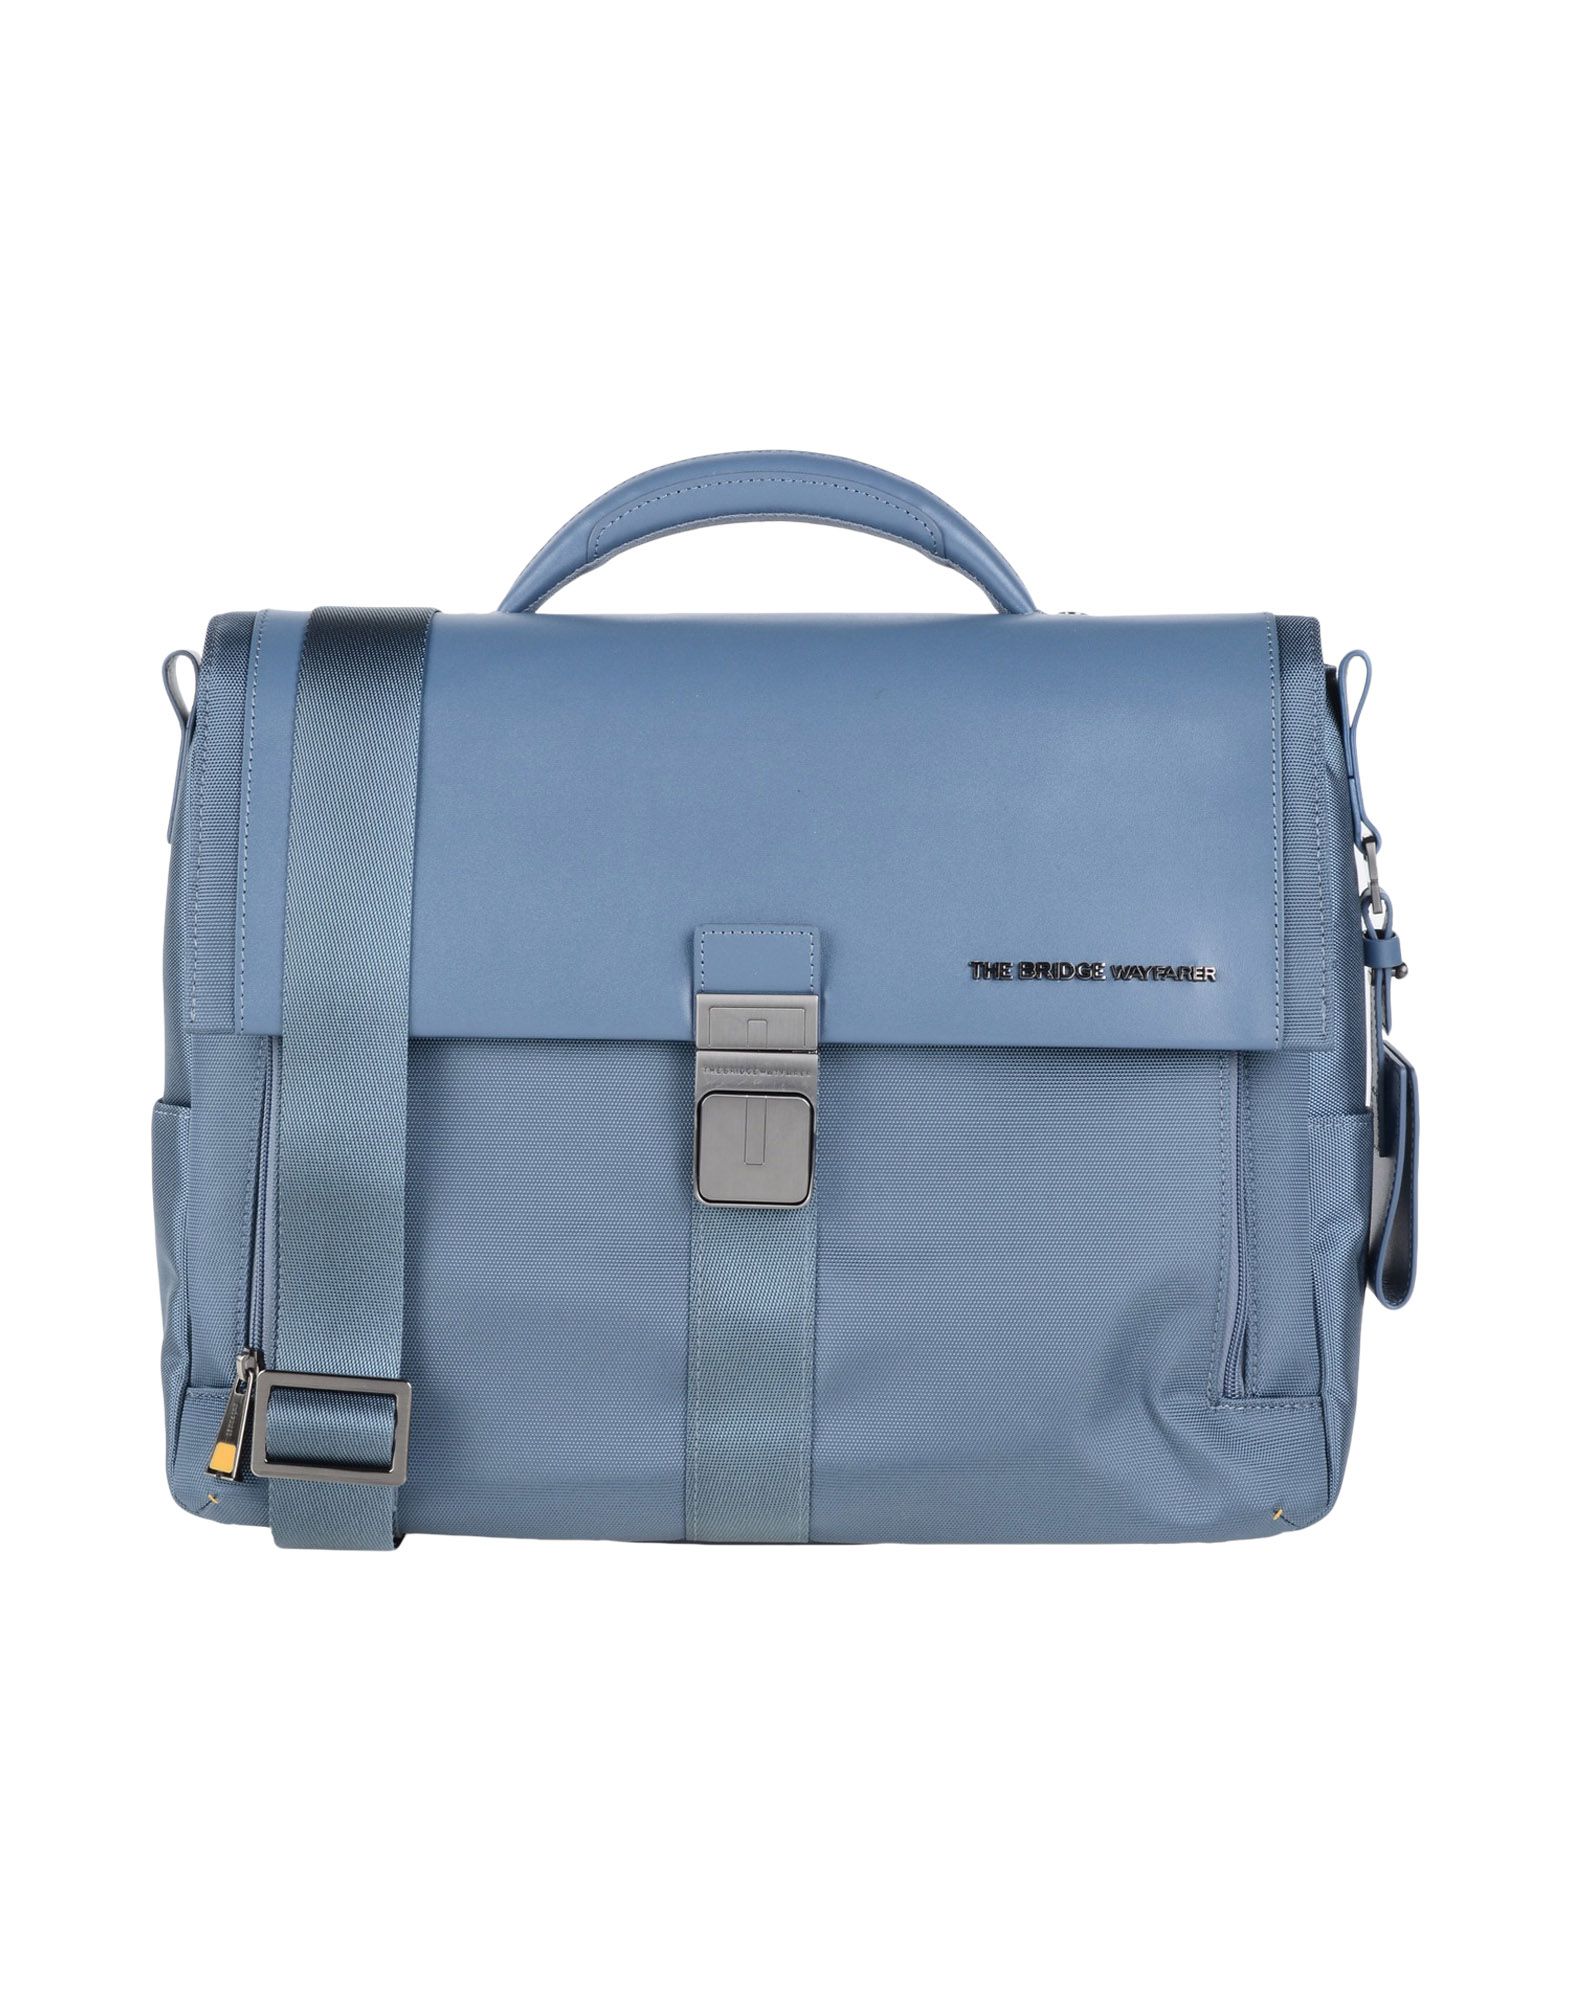 Деловая сумка  - Серый,Синий цвет